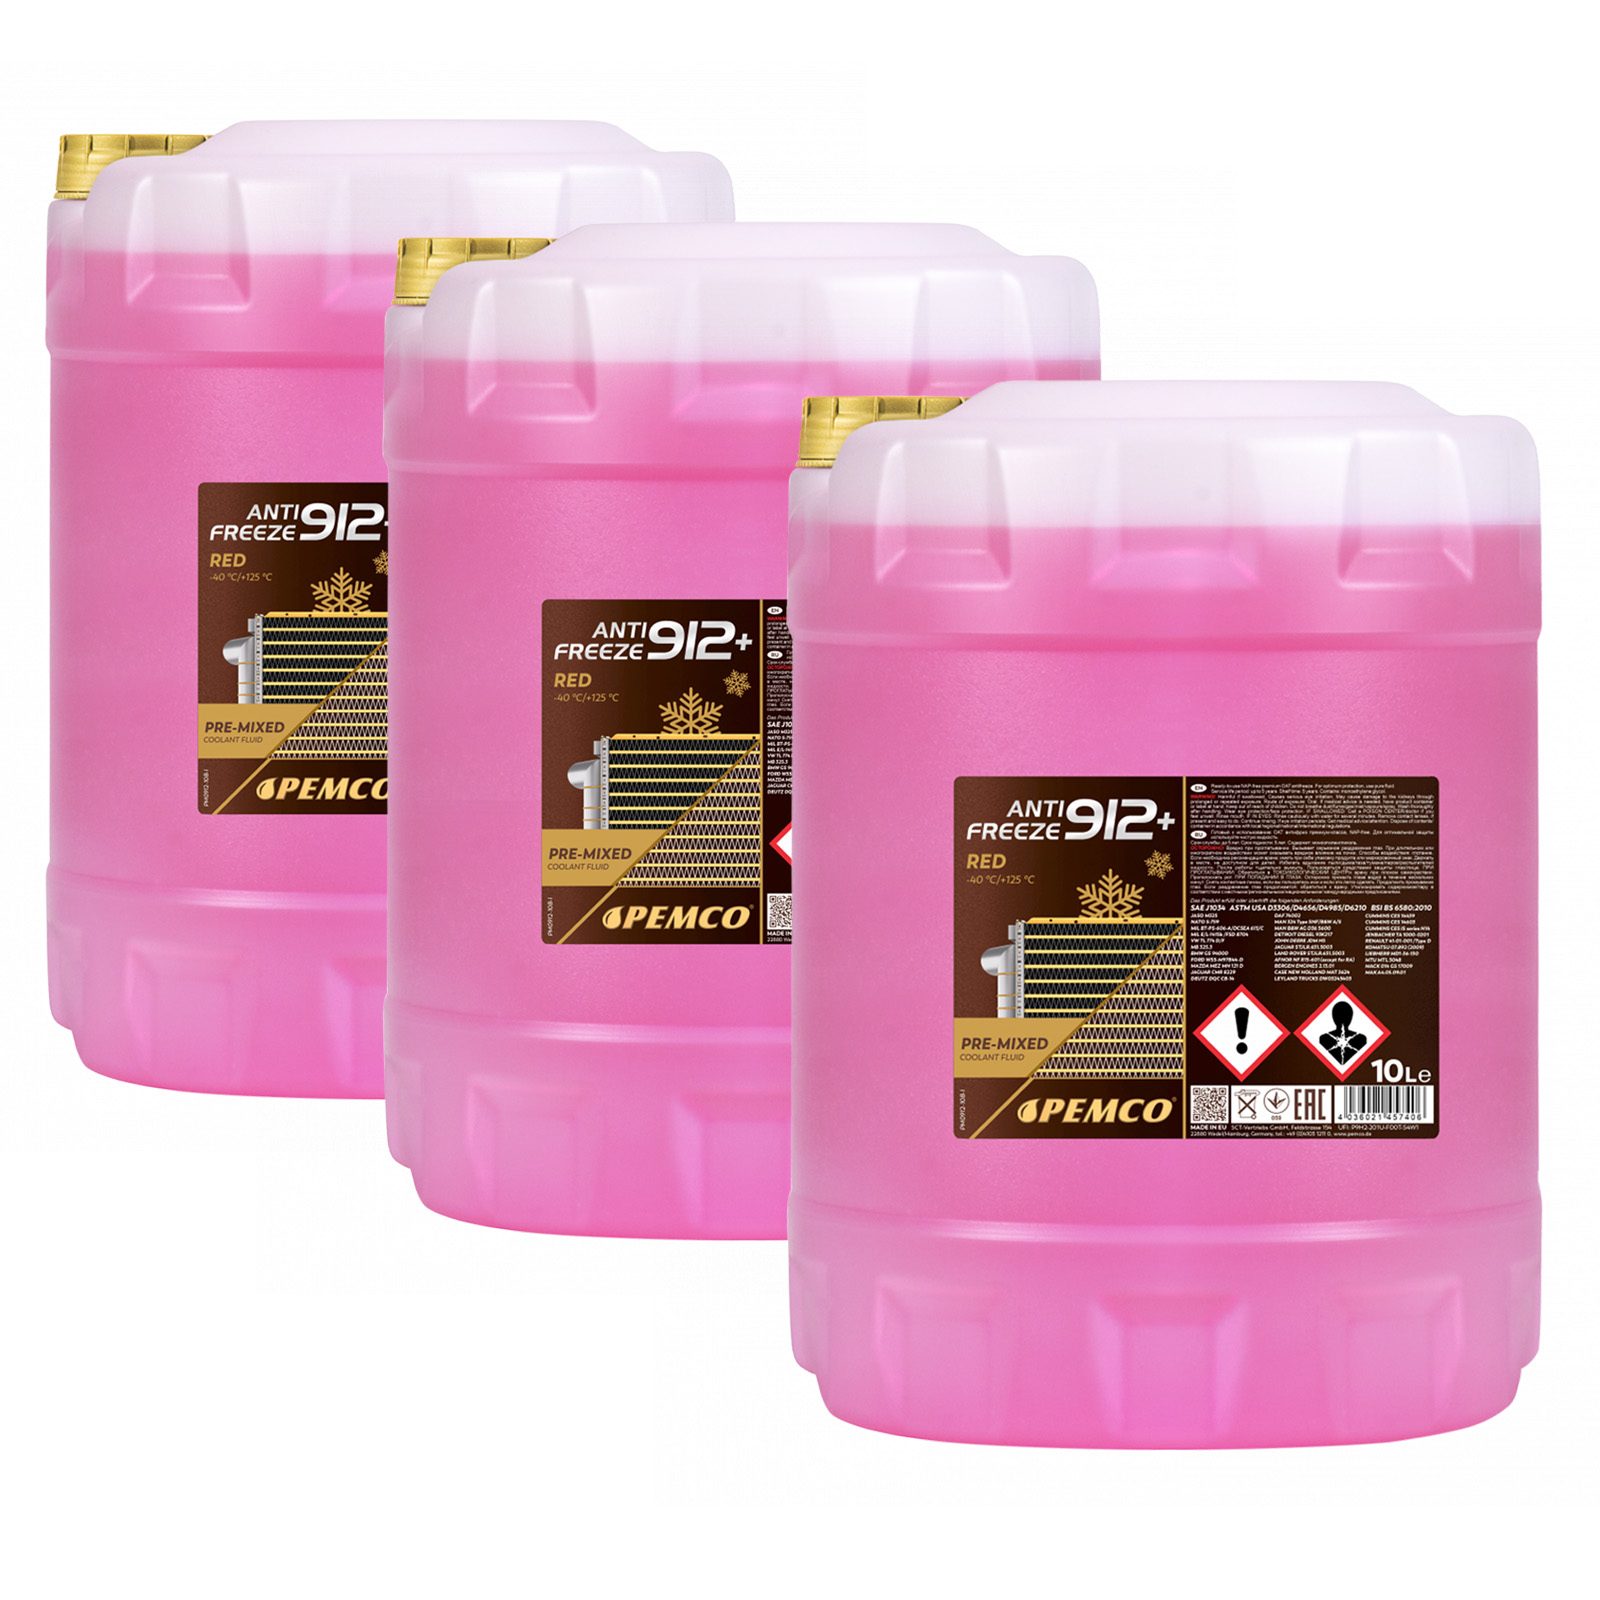 30 Liter PEMCO Anti Freeze 912+ Kühler Frostschutz bis -40C rosa rot violett